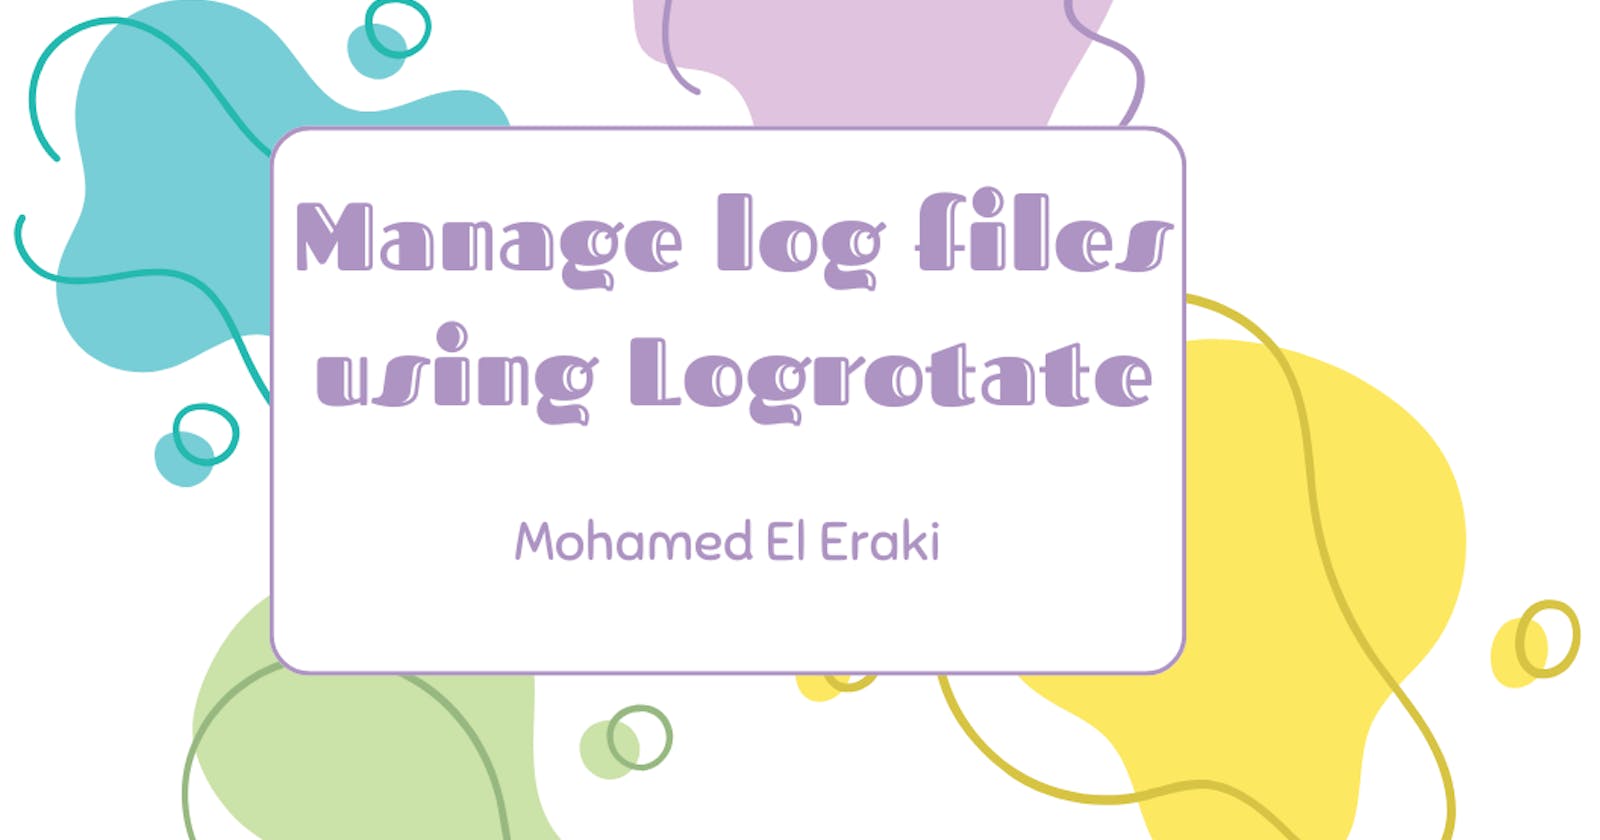 Managing Log Retention using Logrotate